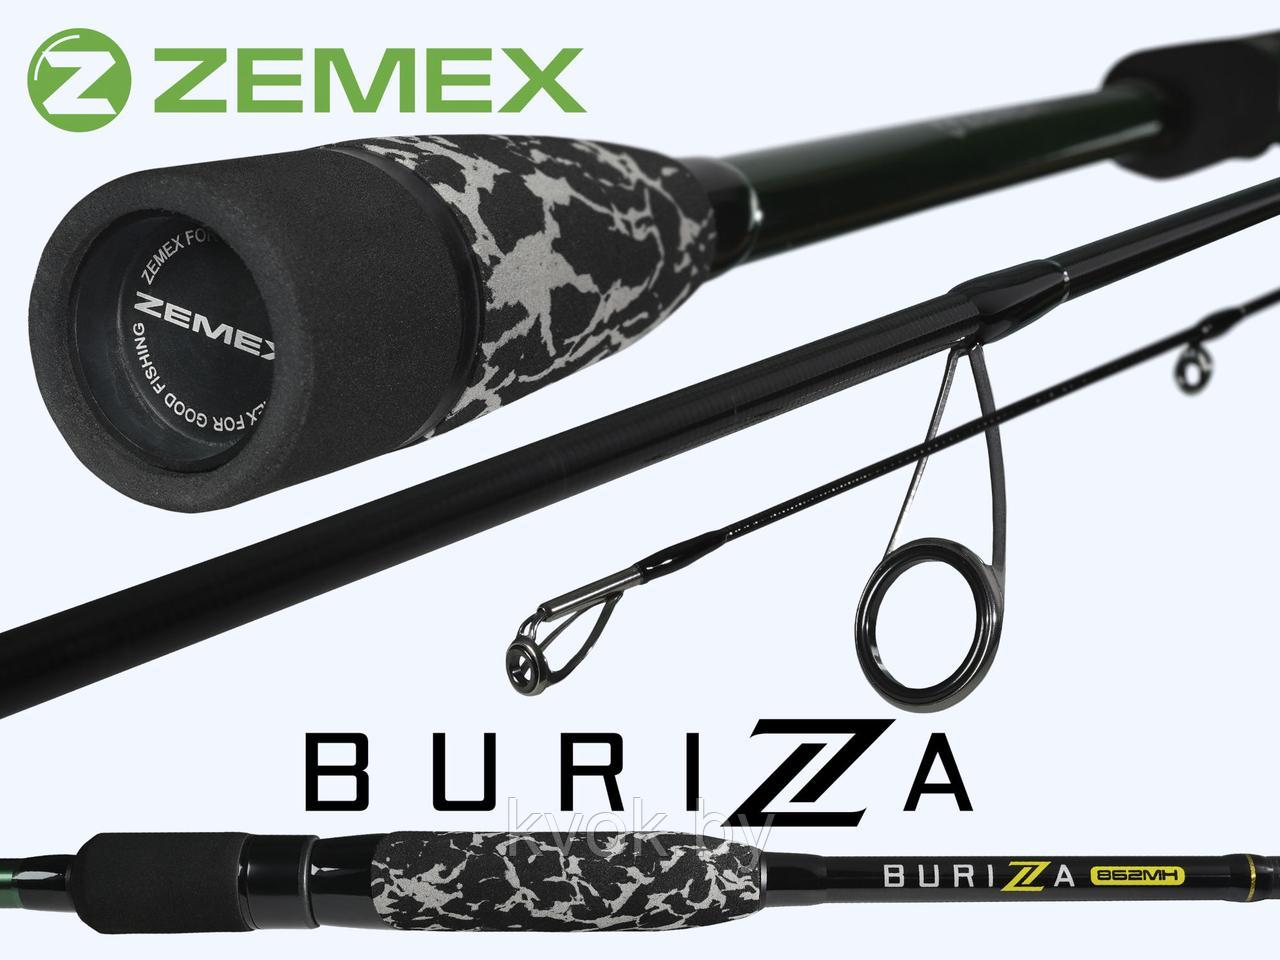 Спиннинг ZEMEX BURIZA 882MH 2.64 м тест: 8-35 гр.141 гр